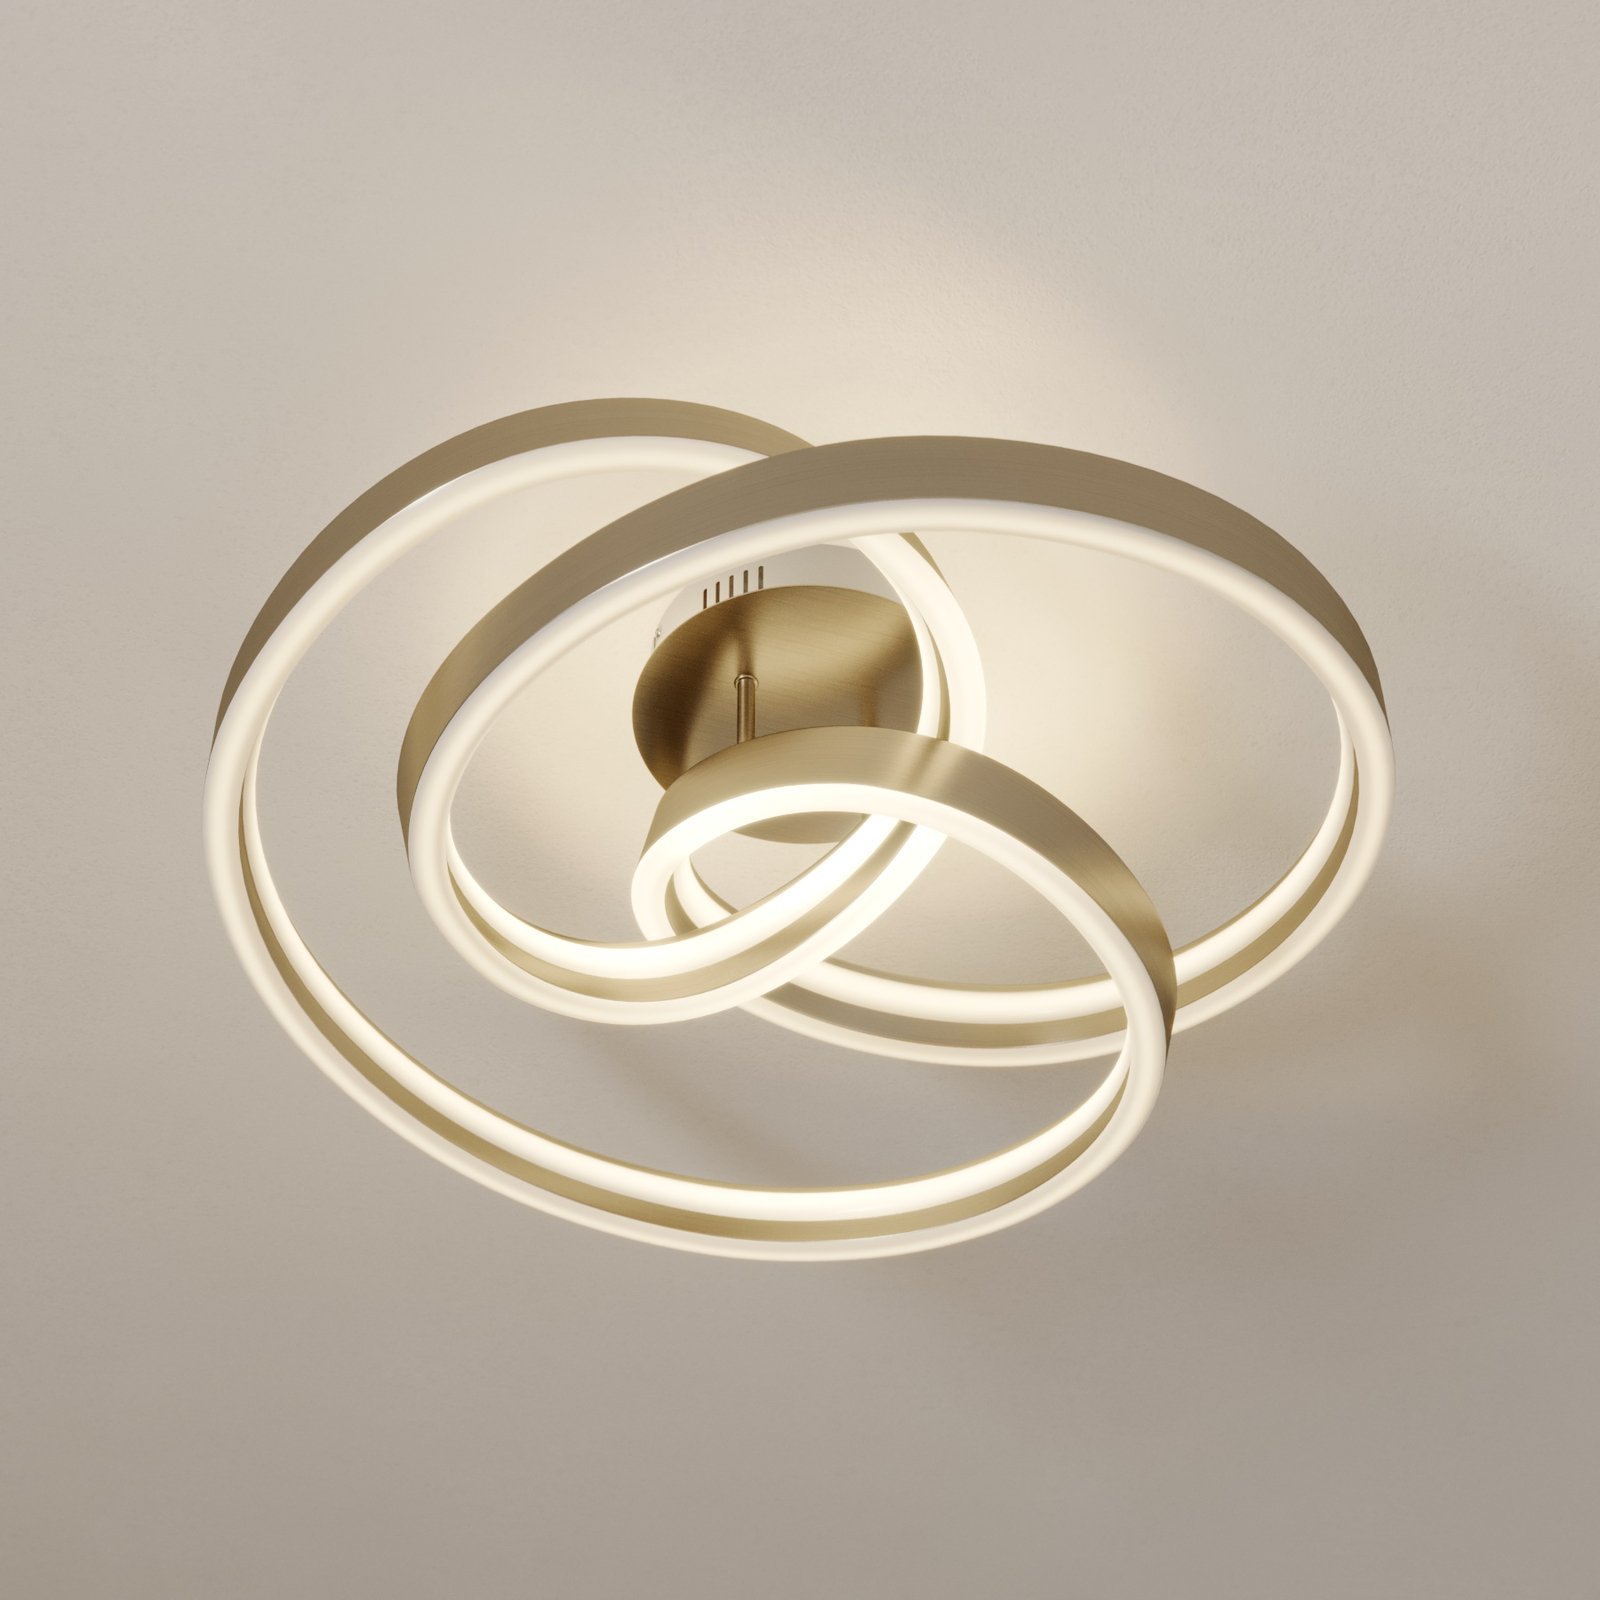 Lucande Gunbritt LED-taklampa, 60 cm